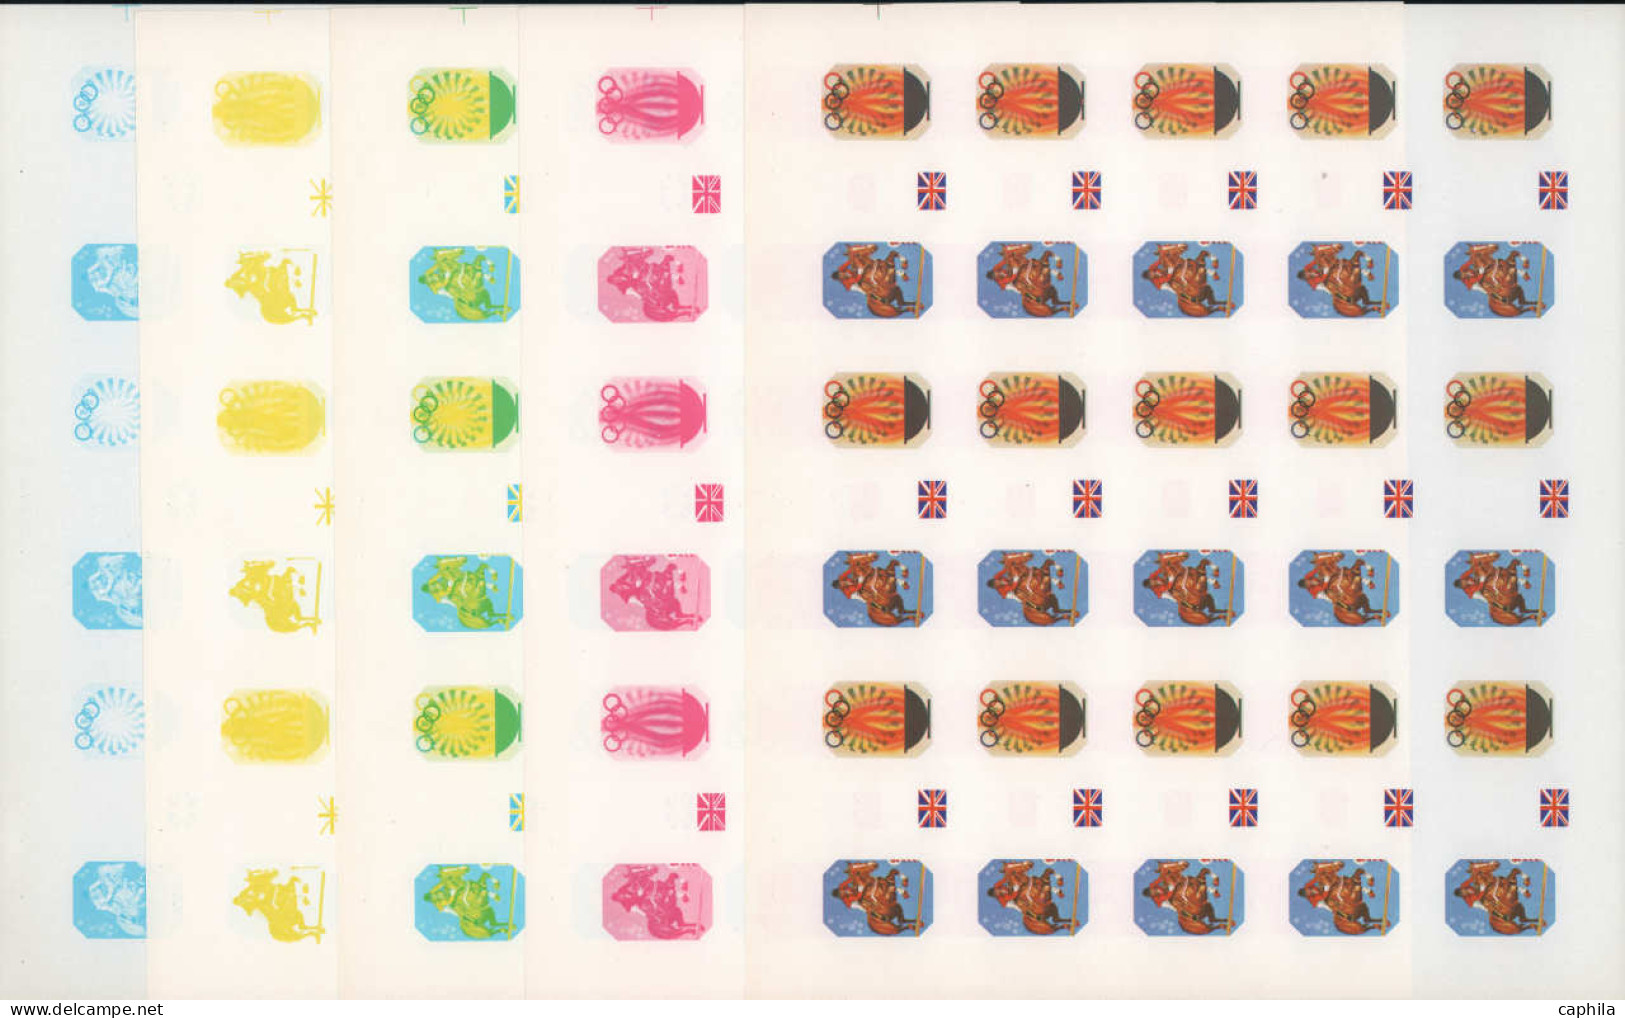 ARABIE SUD/E SHARJAH Poste ** - Michel 1158/77, exceptionnelle collection de 106 feuilles entières de 15 essais de coule